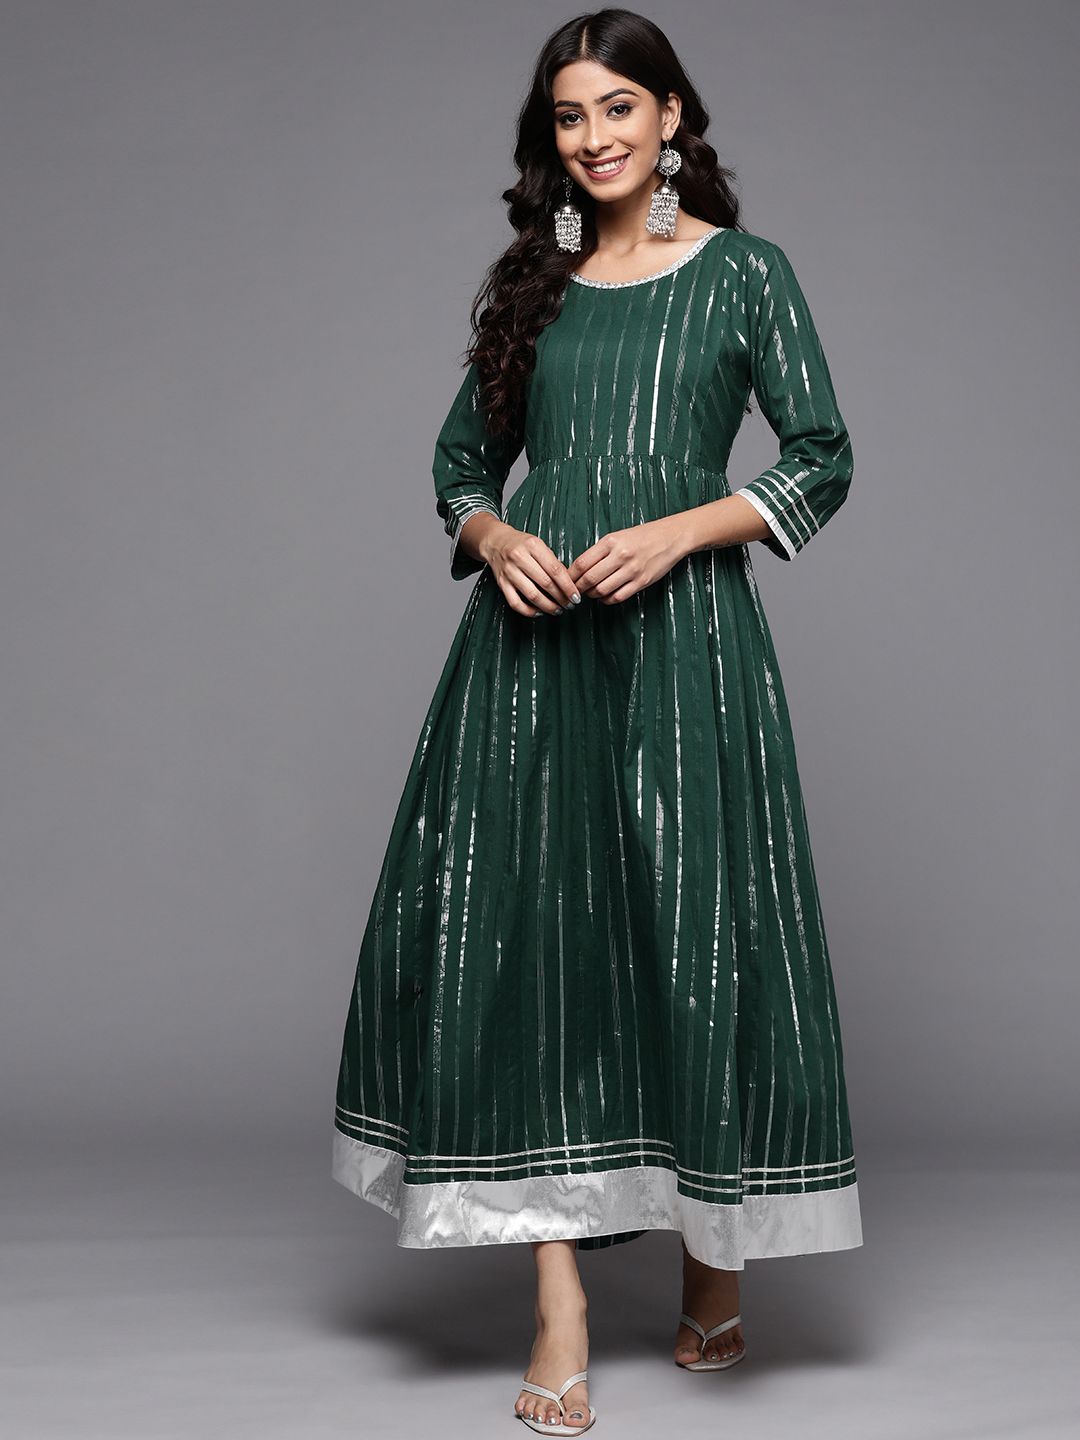 Varanga Green & Silver Striped Maxi Dress Price in India